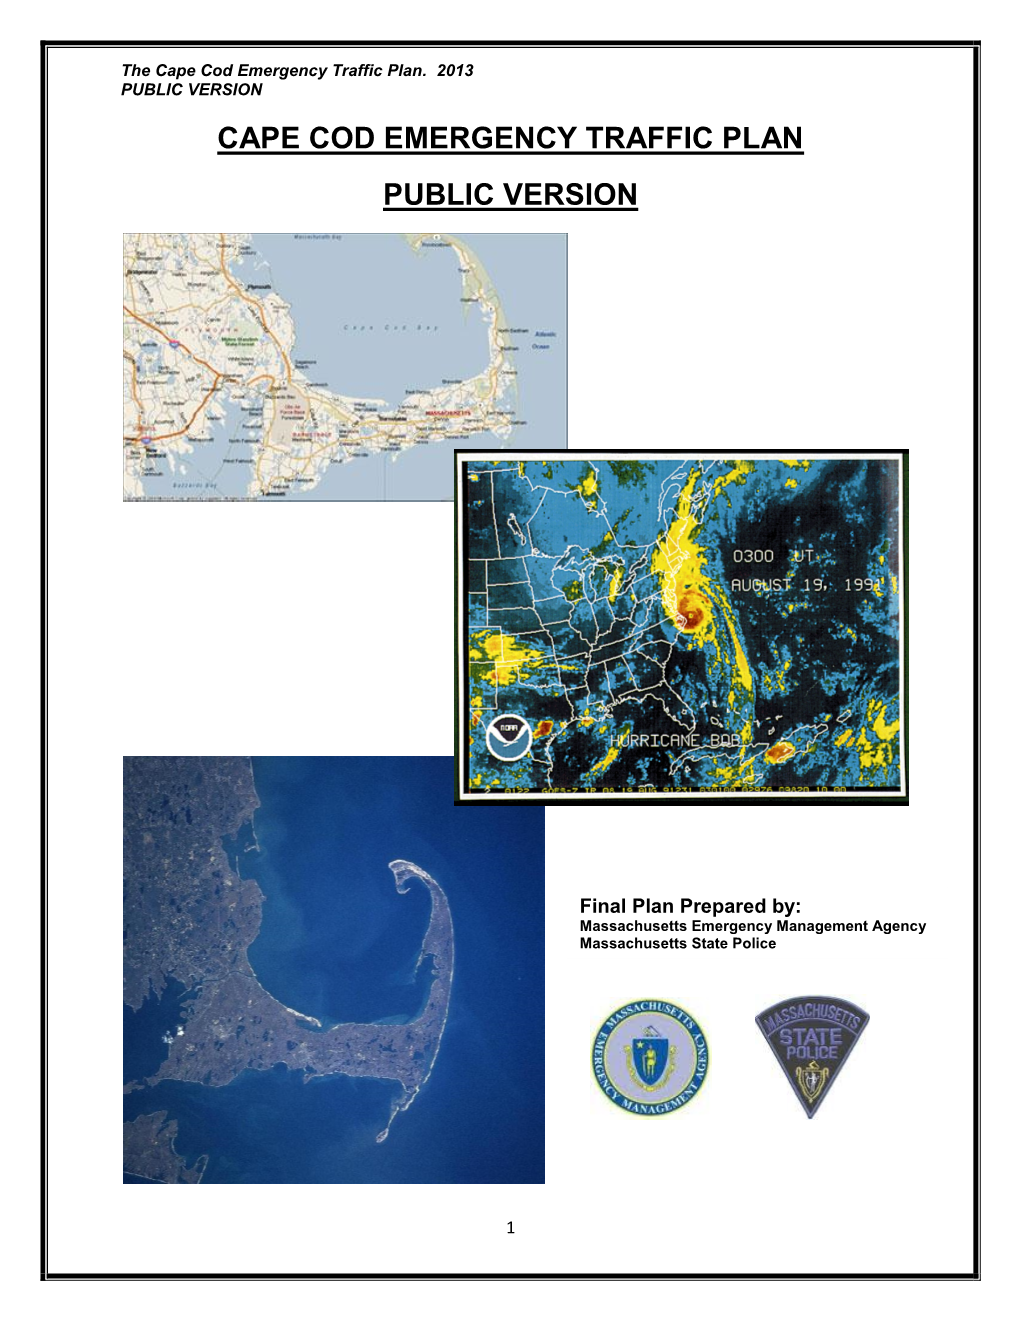 Cape Cod Emergency Traffic Plan Public Version